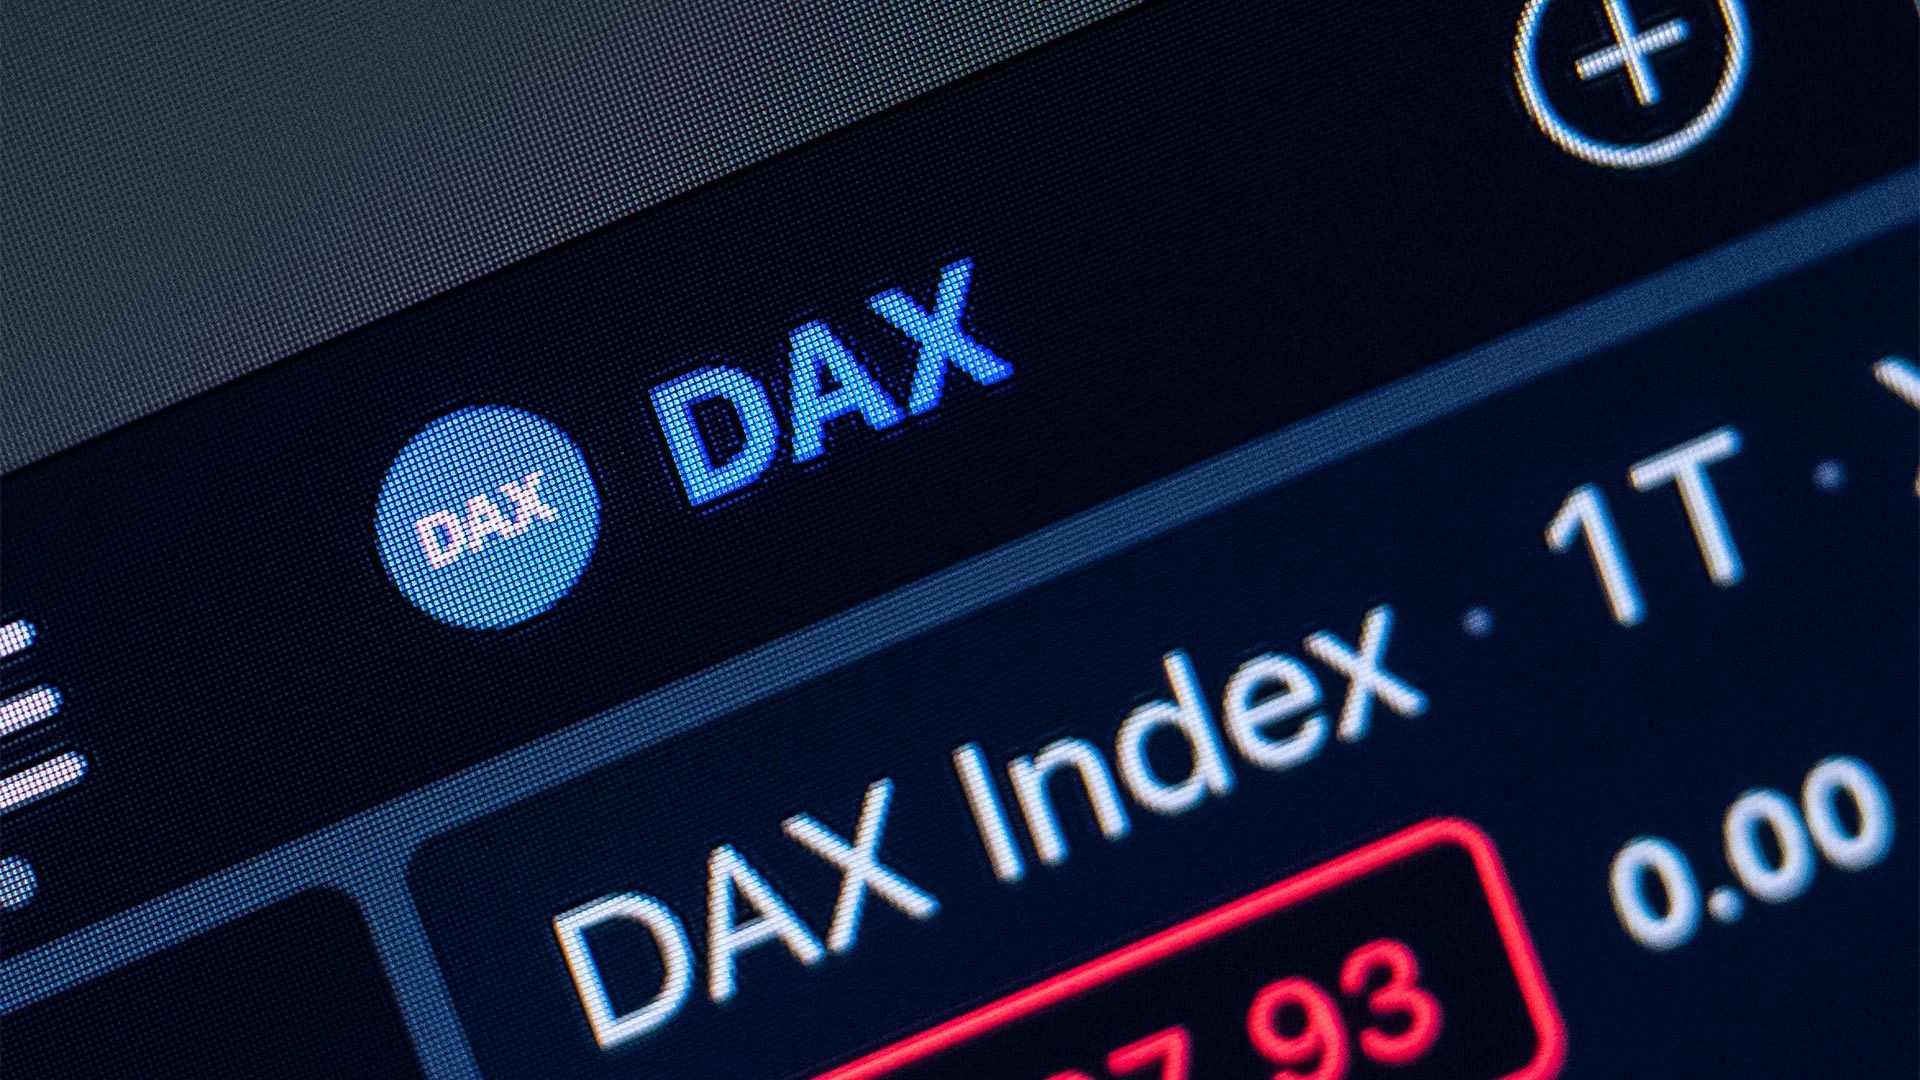 DAX-Logo und Schriftzug auf einem Laptop-Display | picture alliance/dpa